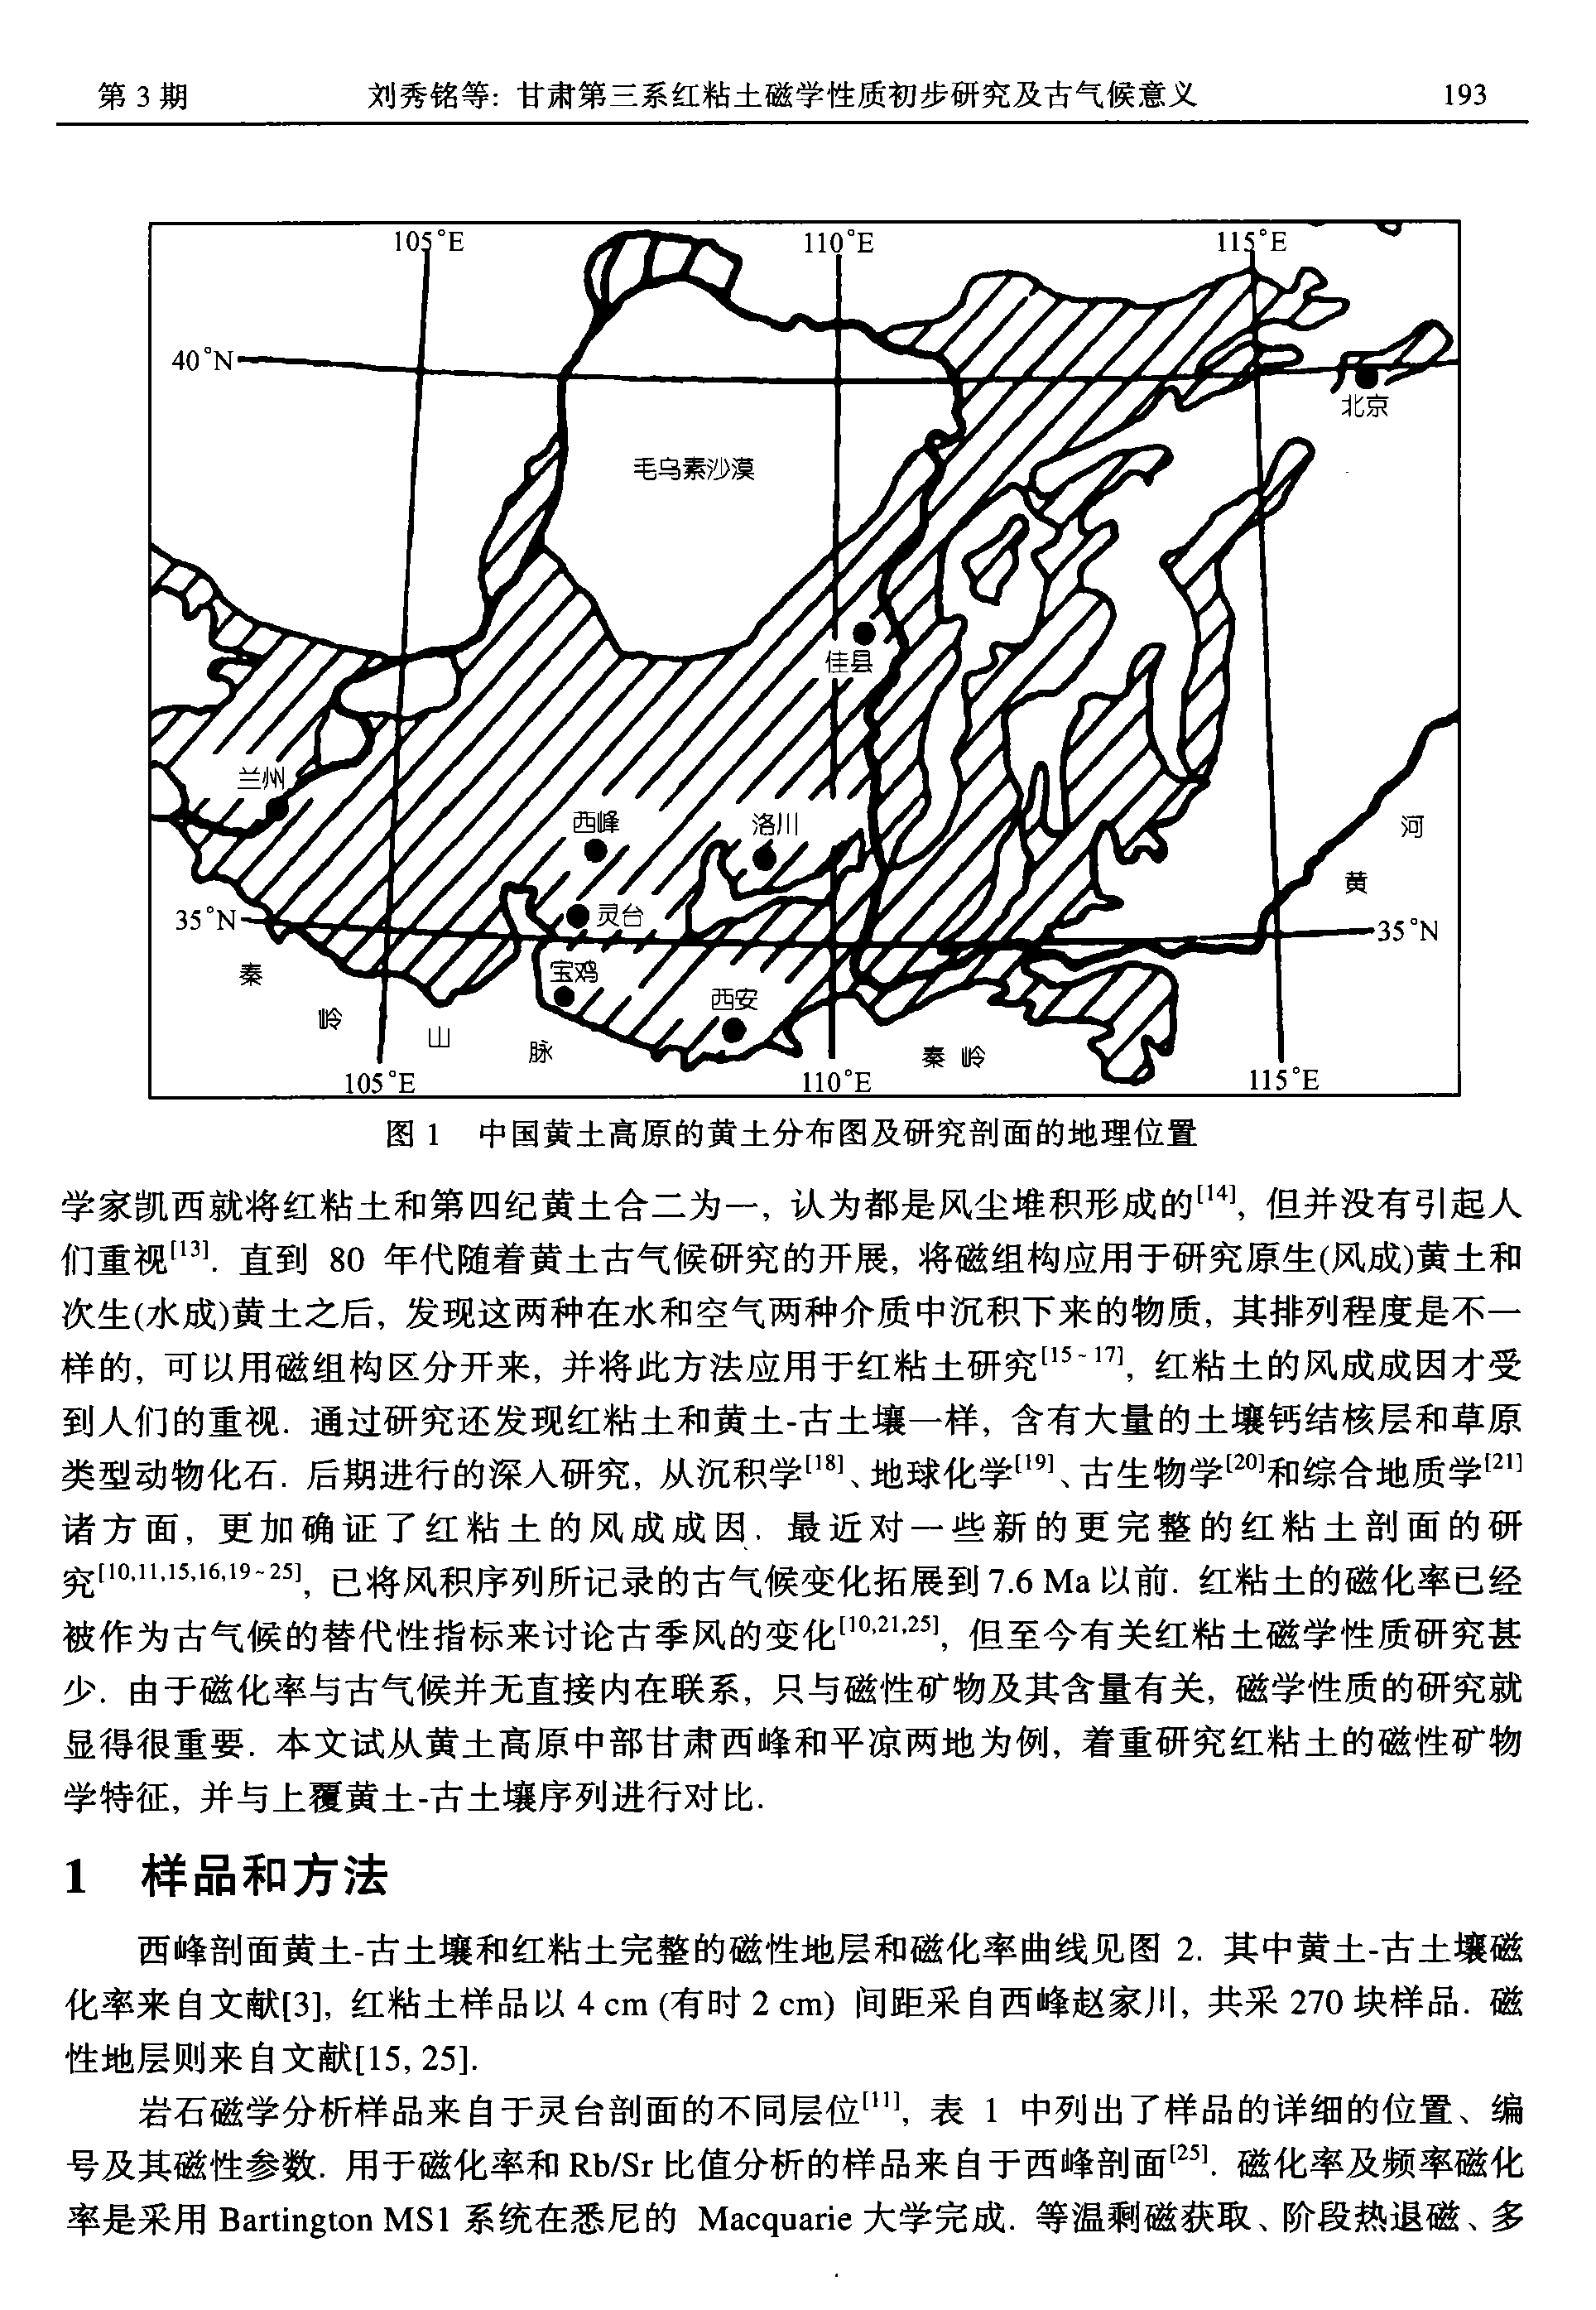 2001 中国科学D - 甘肃第三系红粘土磁学性质初步研究及古气候意义